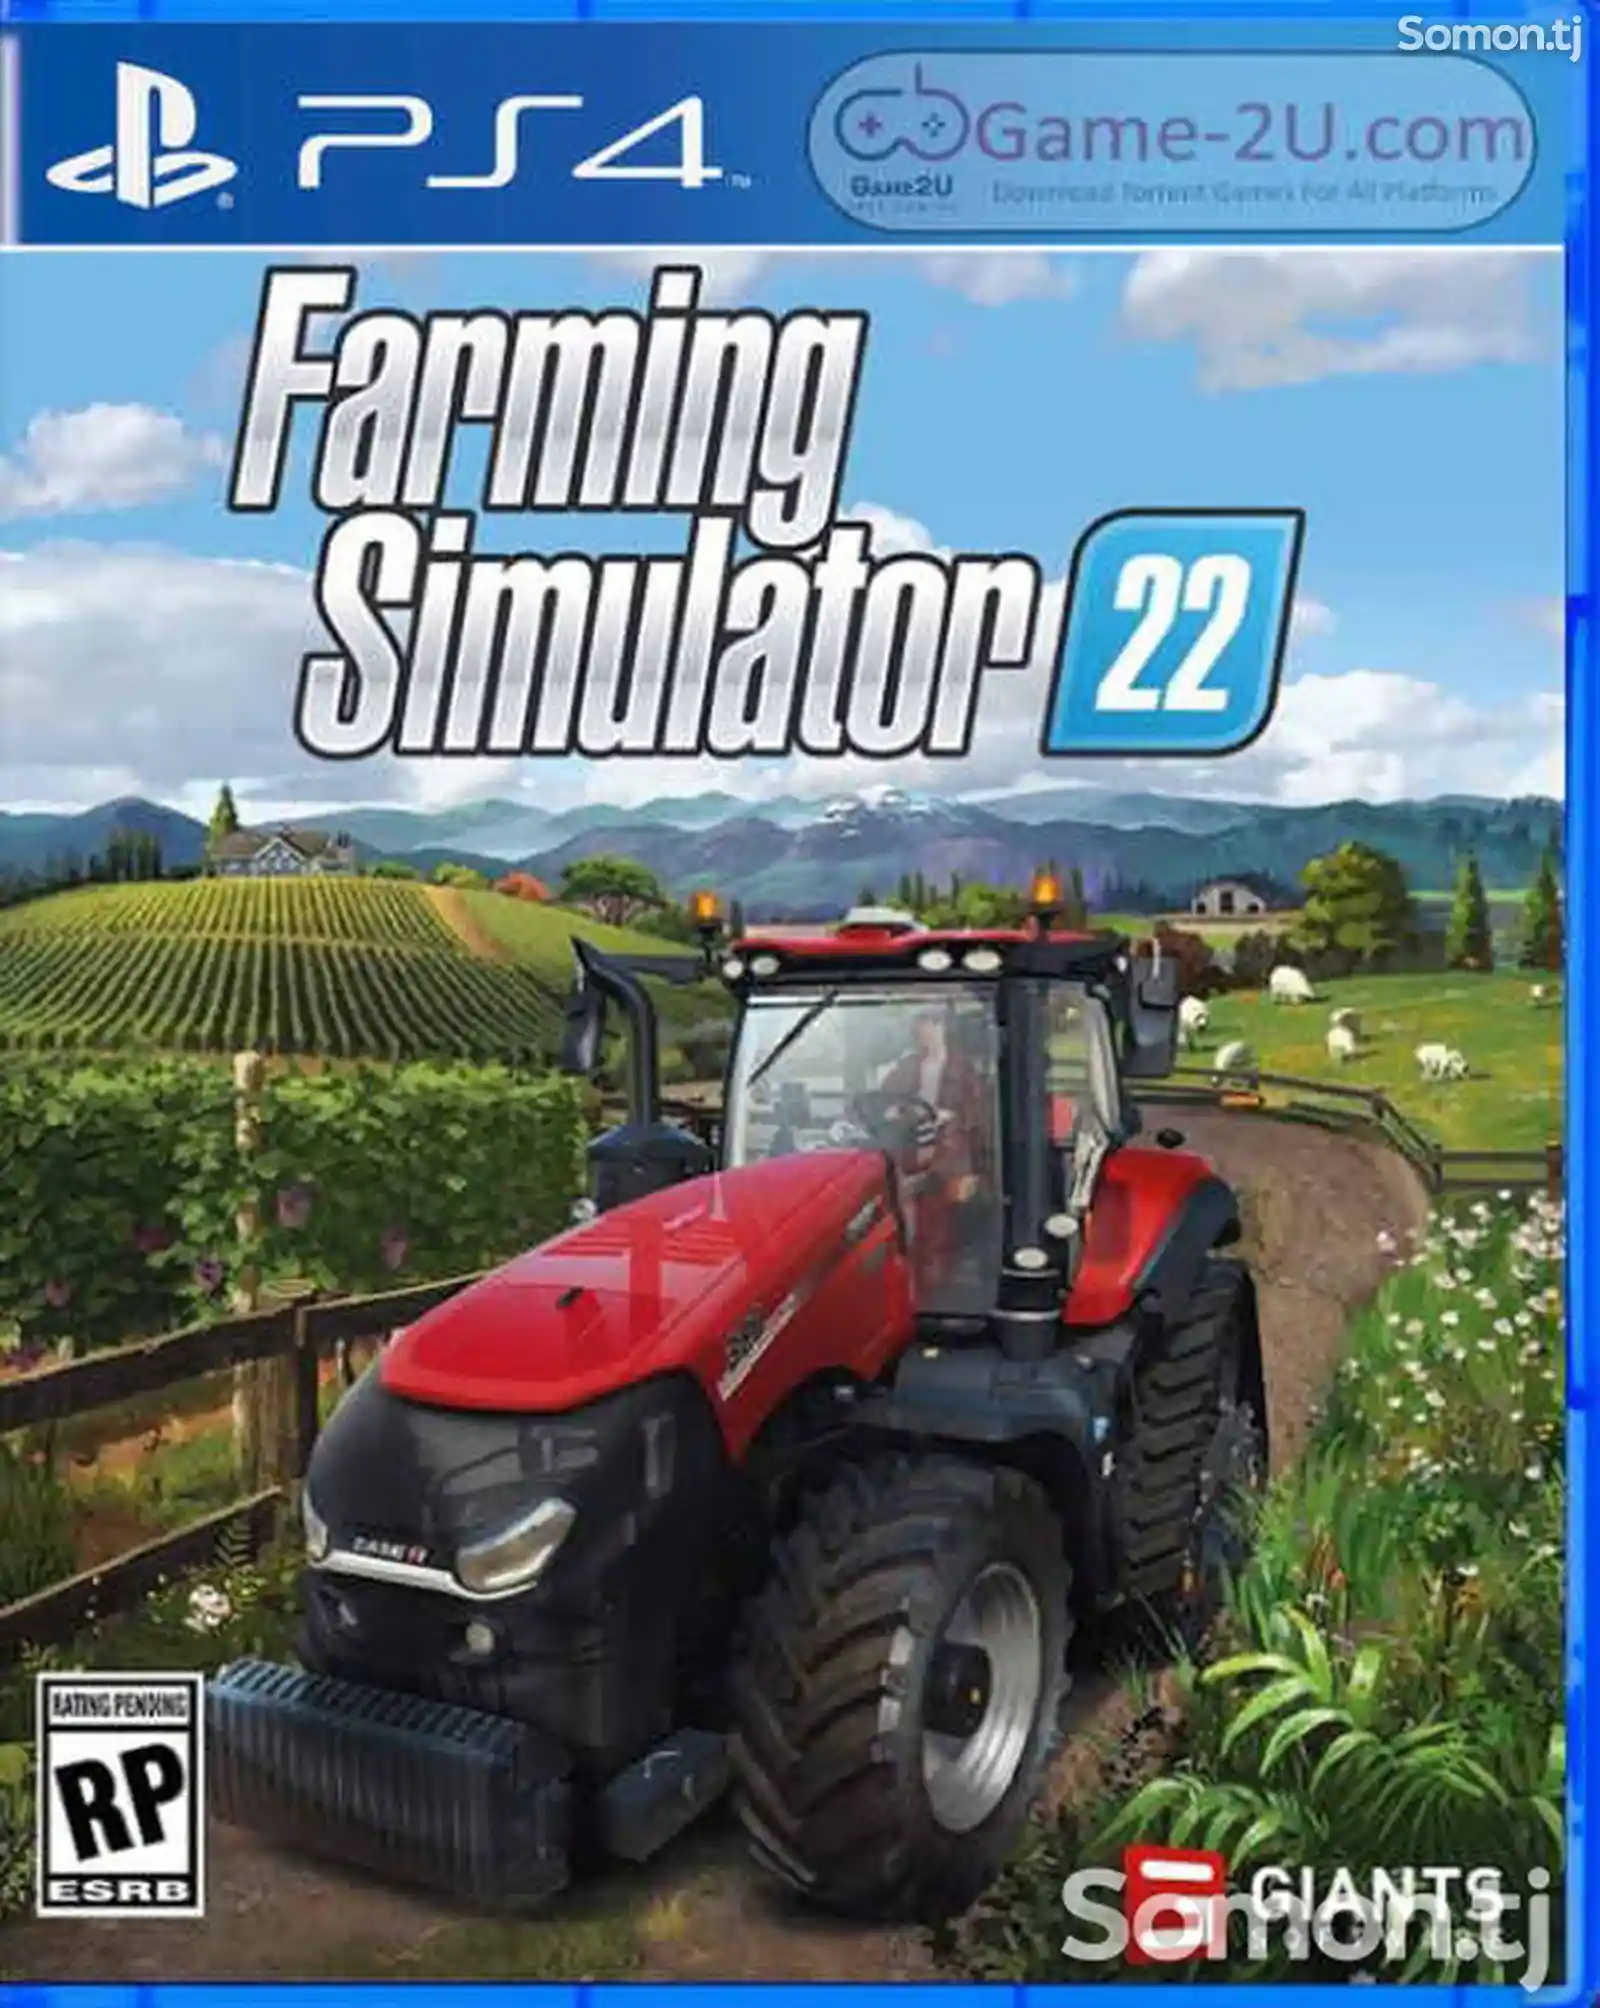 Игра Farming simulator 22 для PS-4 / 5.05 / 6.72 / 7.02 / 7.55 / 9.00 /-1